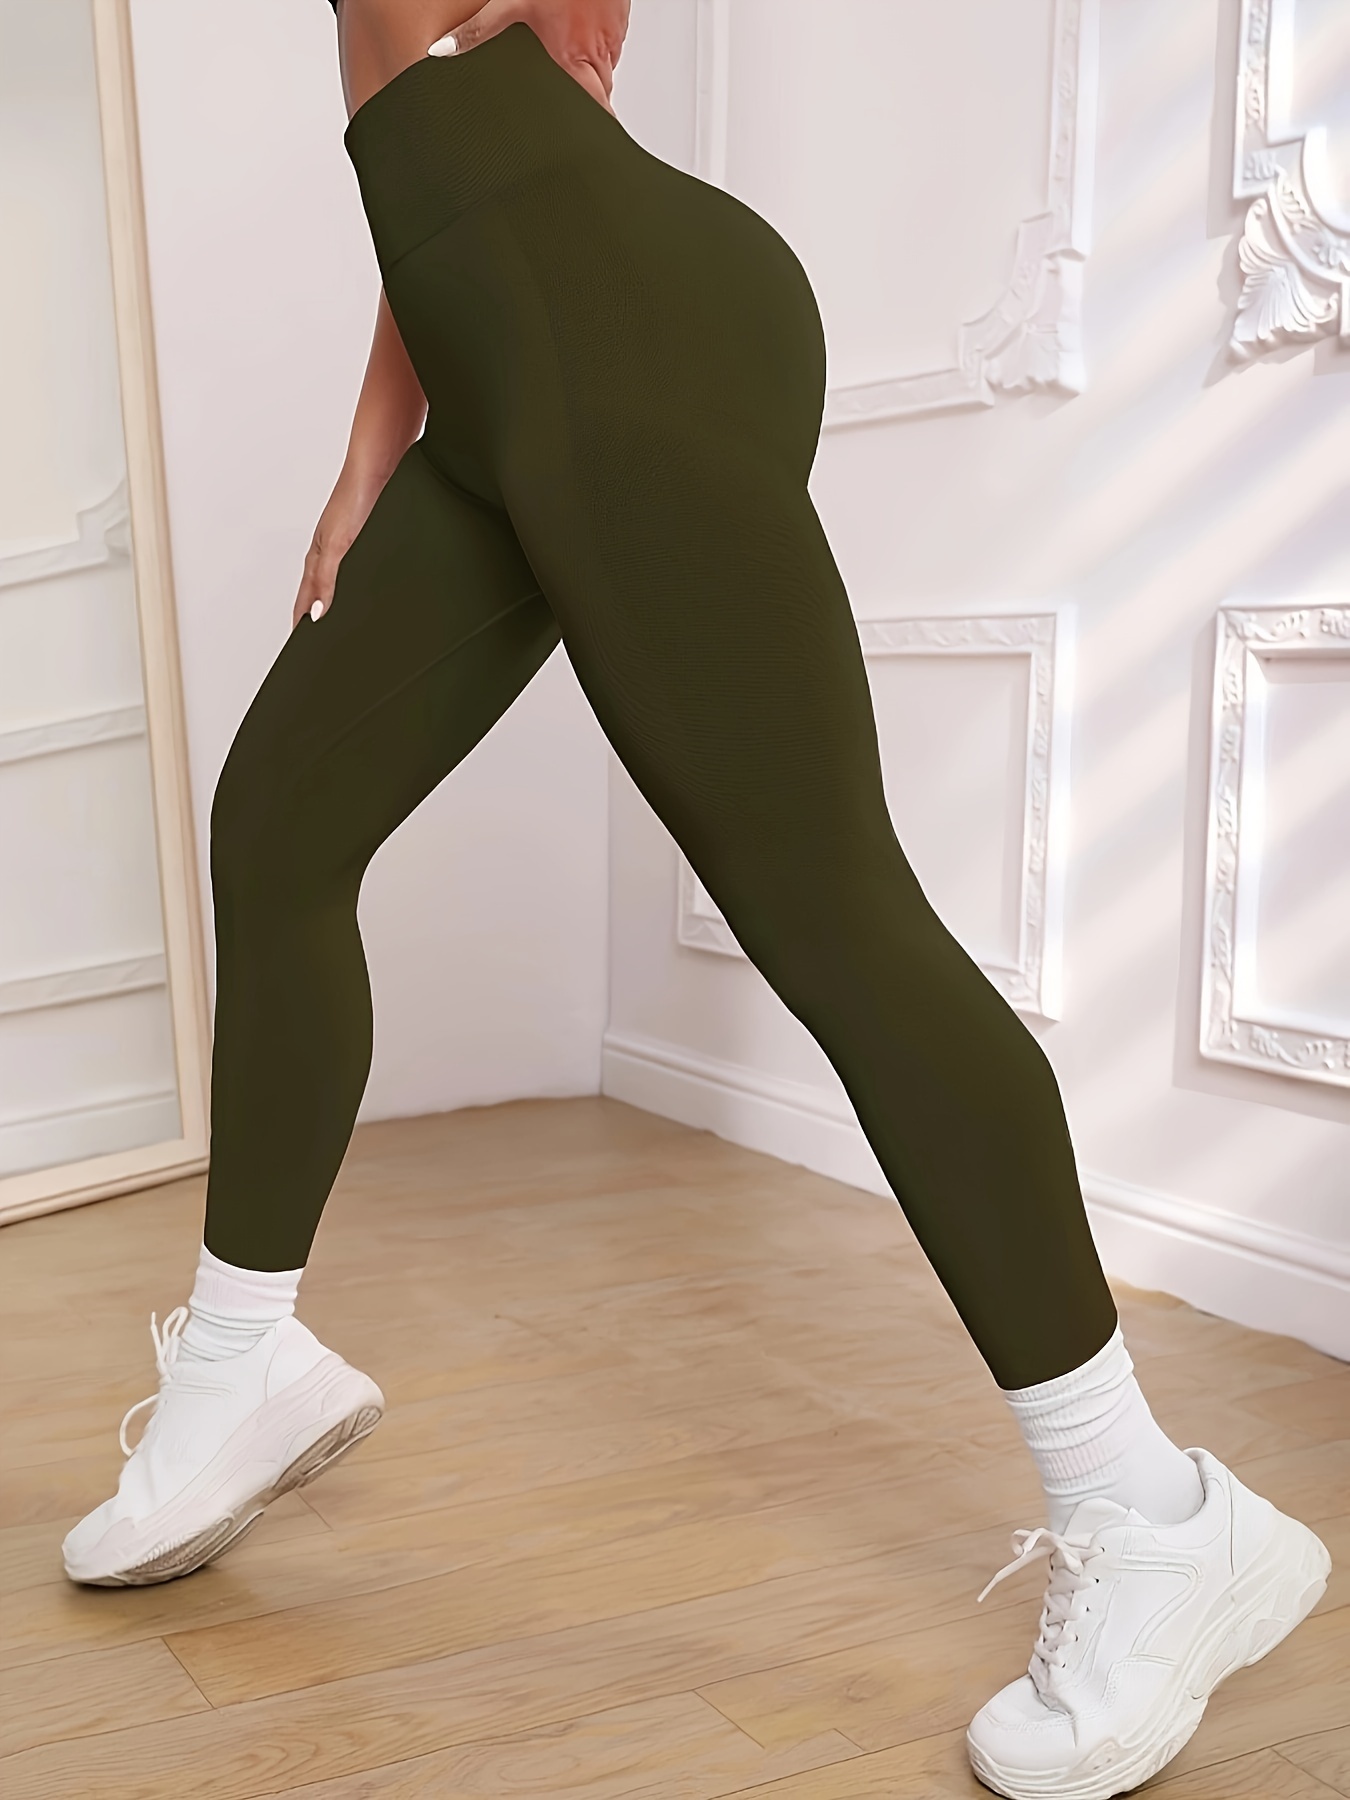 Pantalon Yoga Femmes,Legging De Sport Taille Haute pour Femme